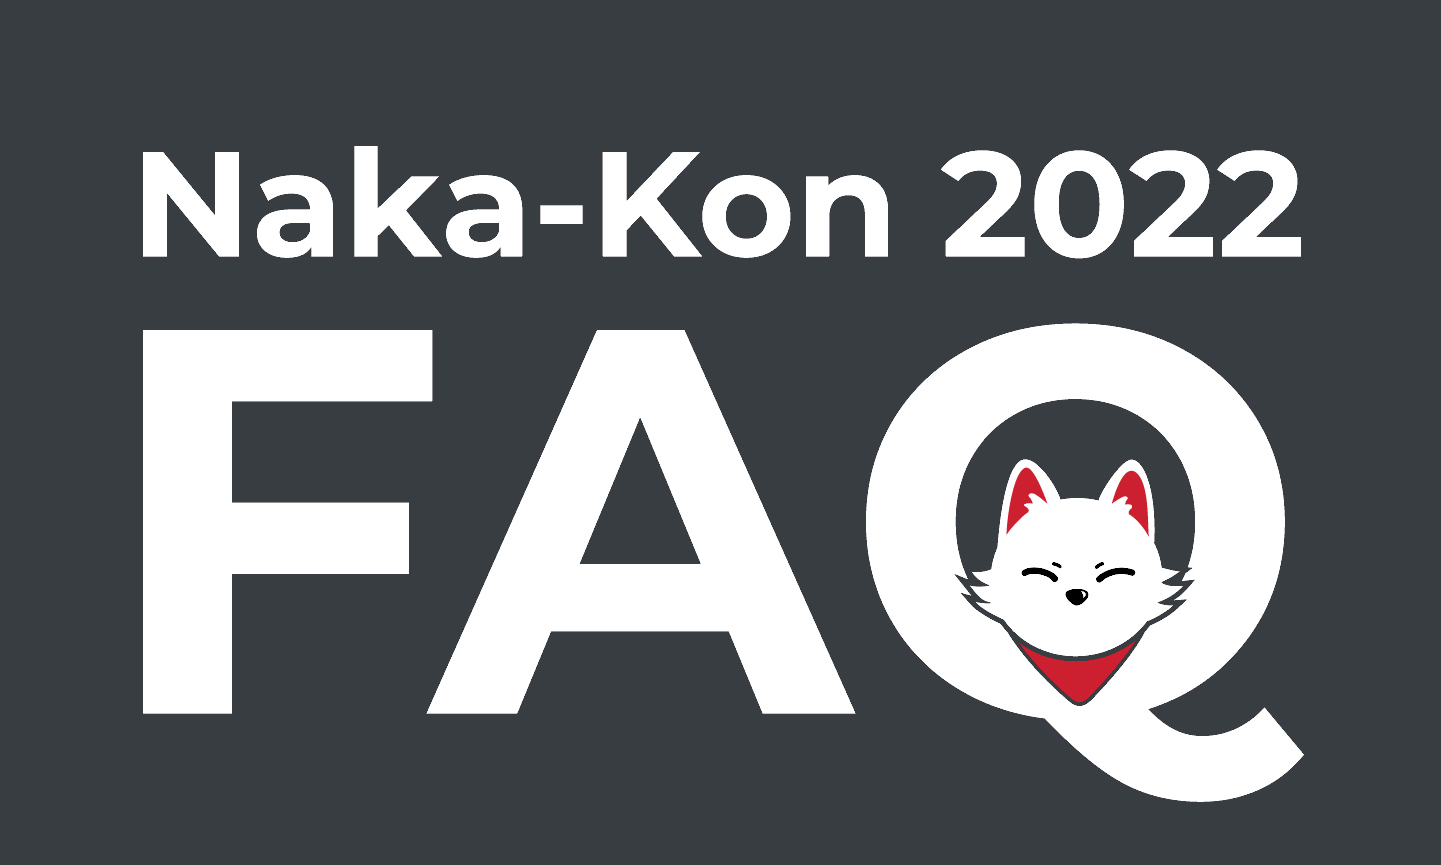 Naka Kon 2022 Schedule Naka-Kon 2022 Faq | Naka-Kon